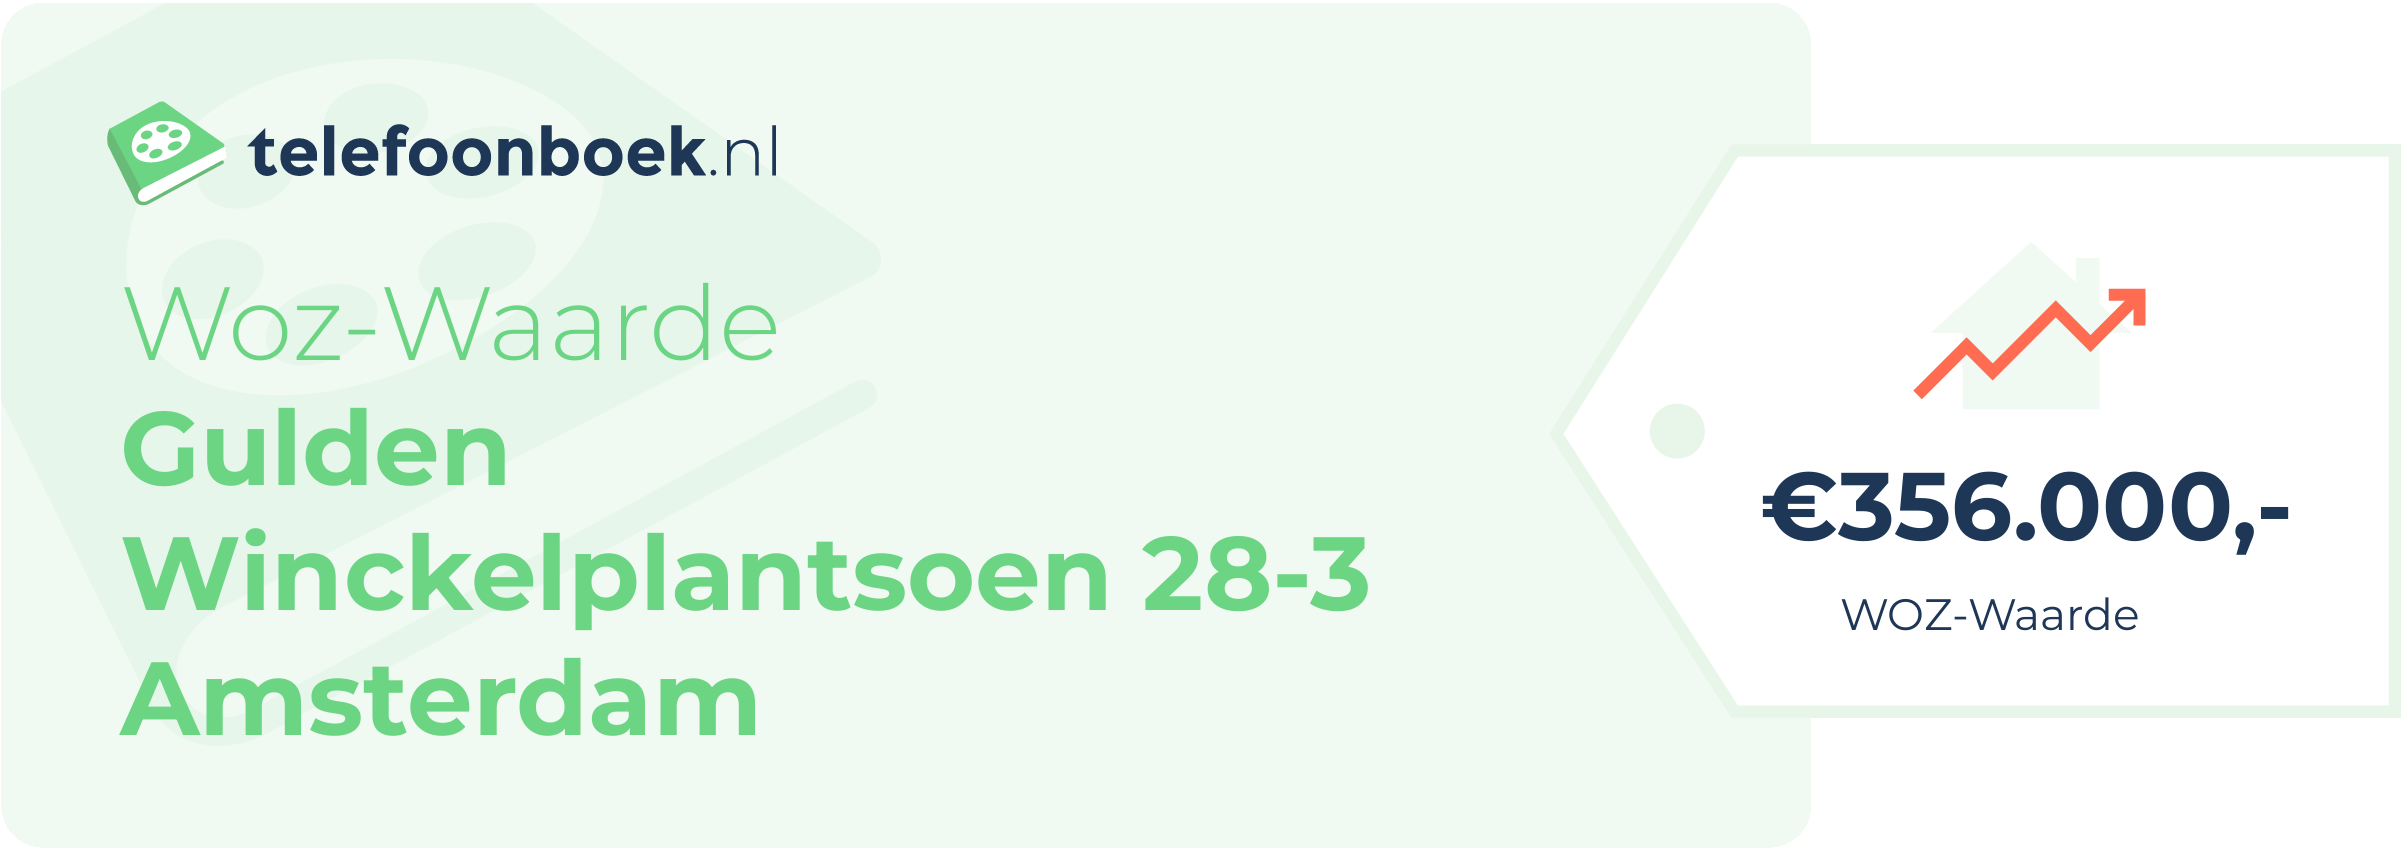 WOZ-waarde Gulden Winckelplantsoen 28-3 Amsterdam